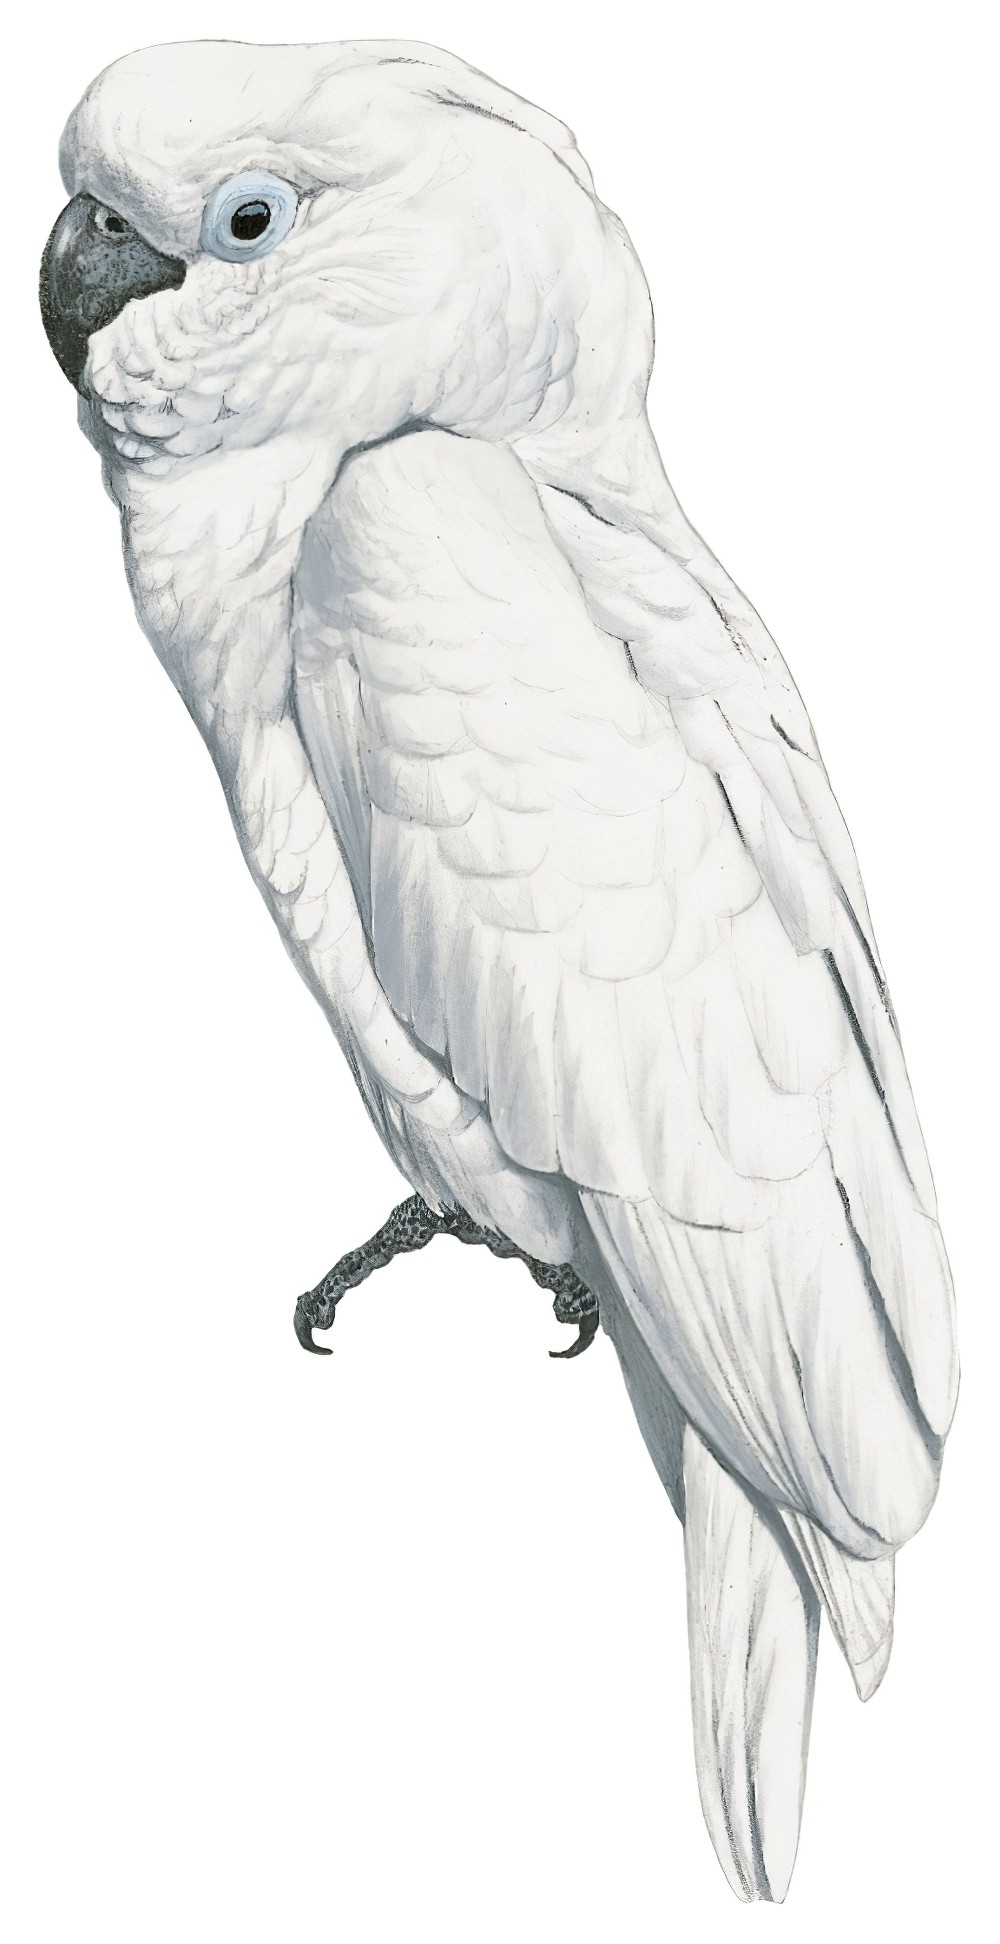 White Cockatoo / Cacatua alba